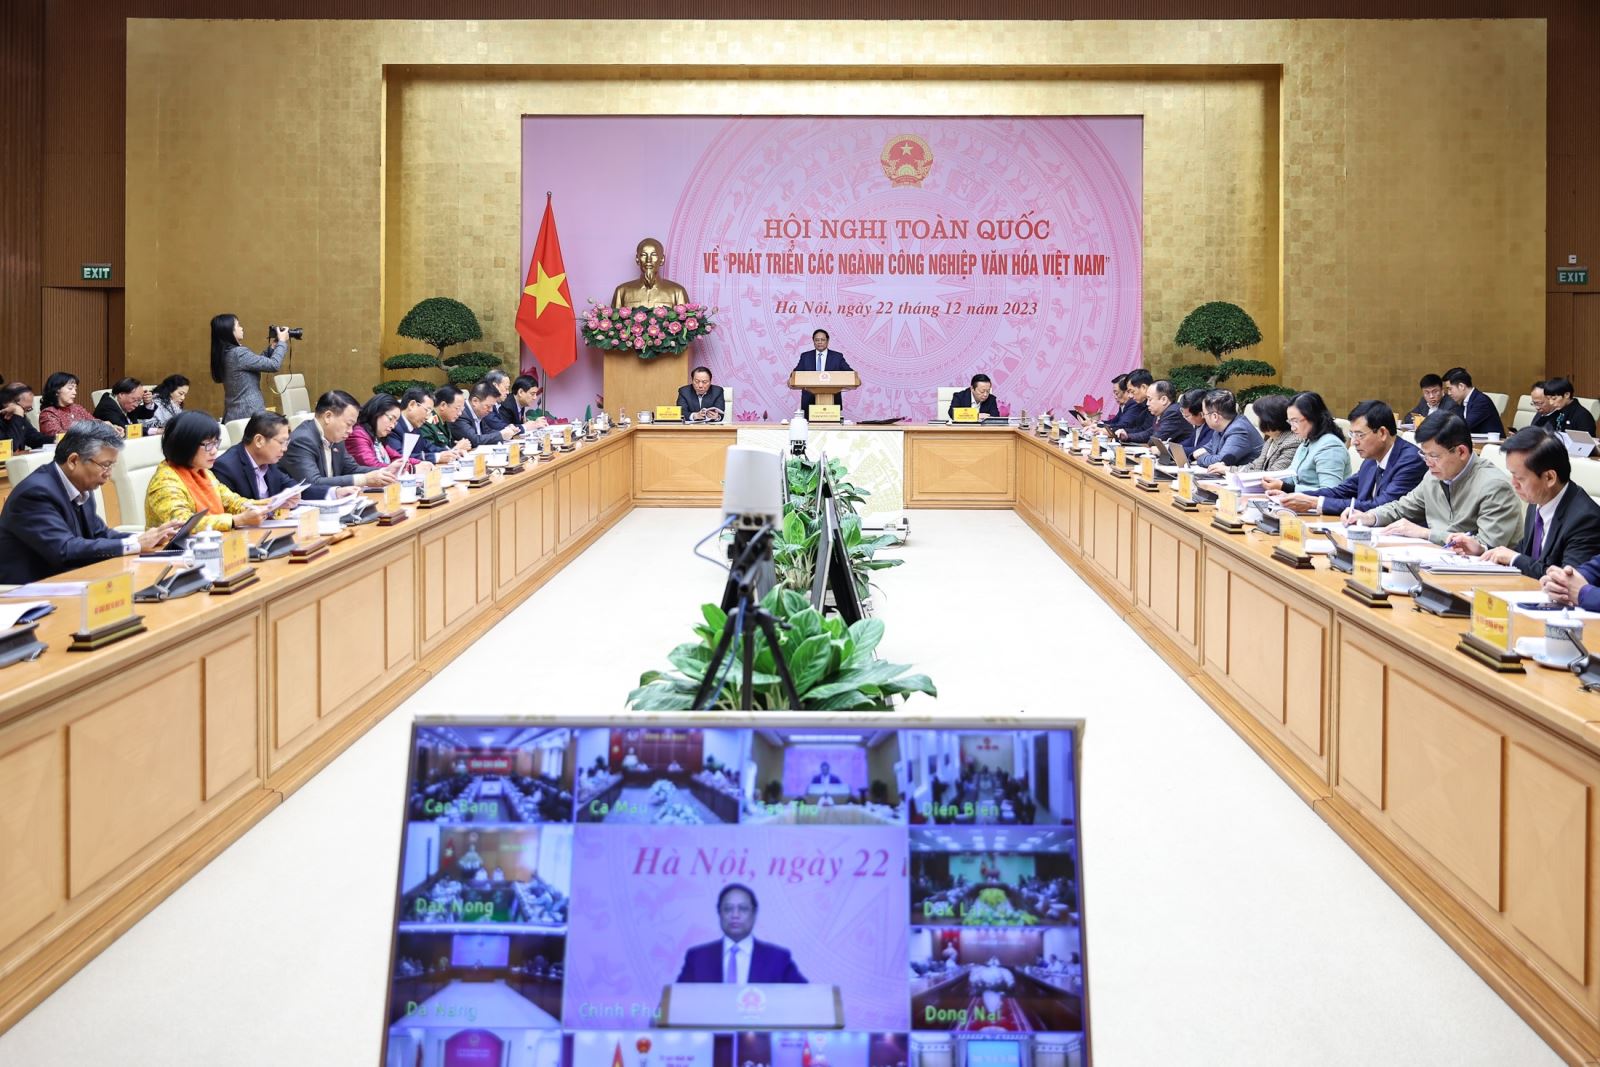 Hội nghị đầu tiên, có ý nghĩa đặc biệt quan trọng về phát triển các ngành công nghiệp văn hóa Việt Nam 